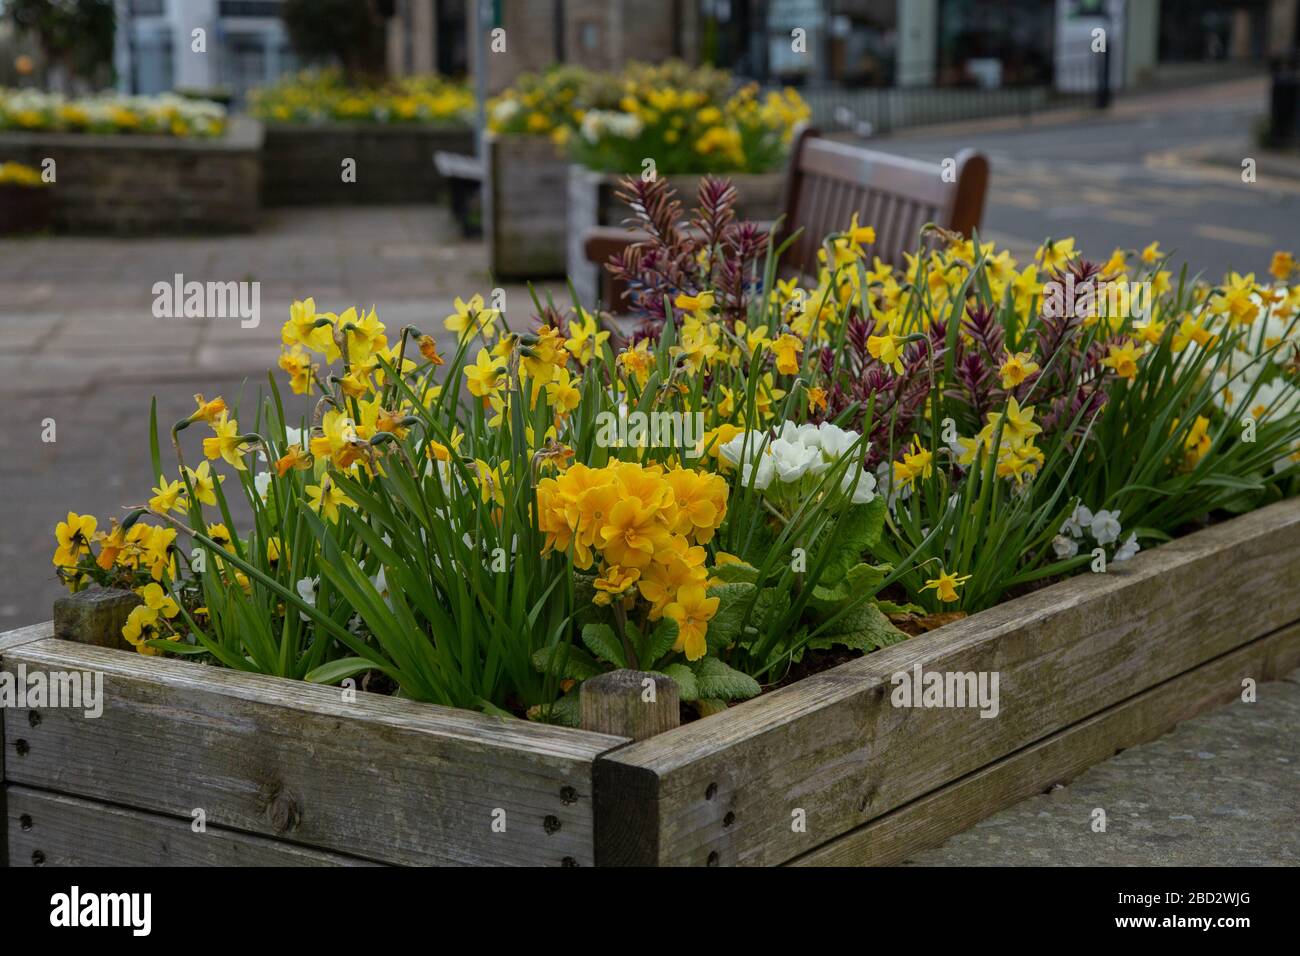 Un lit de fleurs surélevé plein de fleurs de printemps en fleur à Baildon, dans le Yorkshire, en Angleterre. Banque D'Images